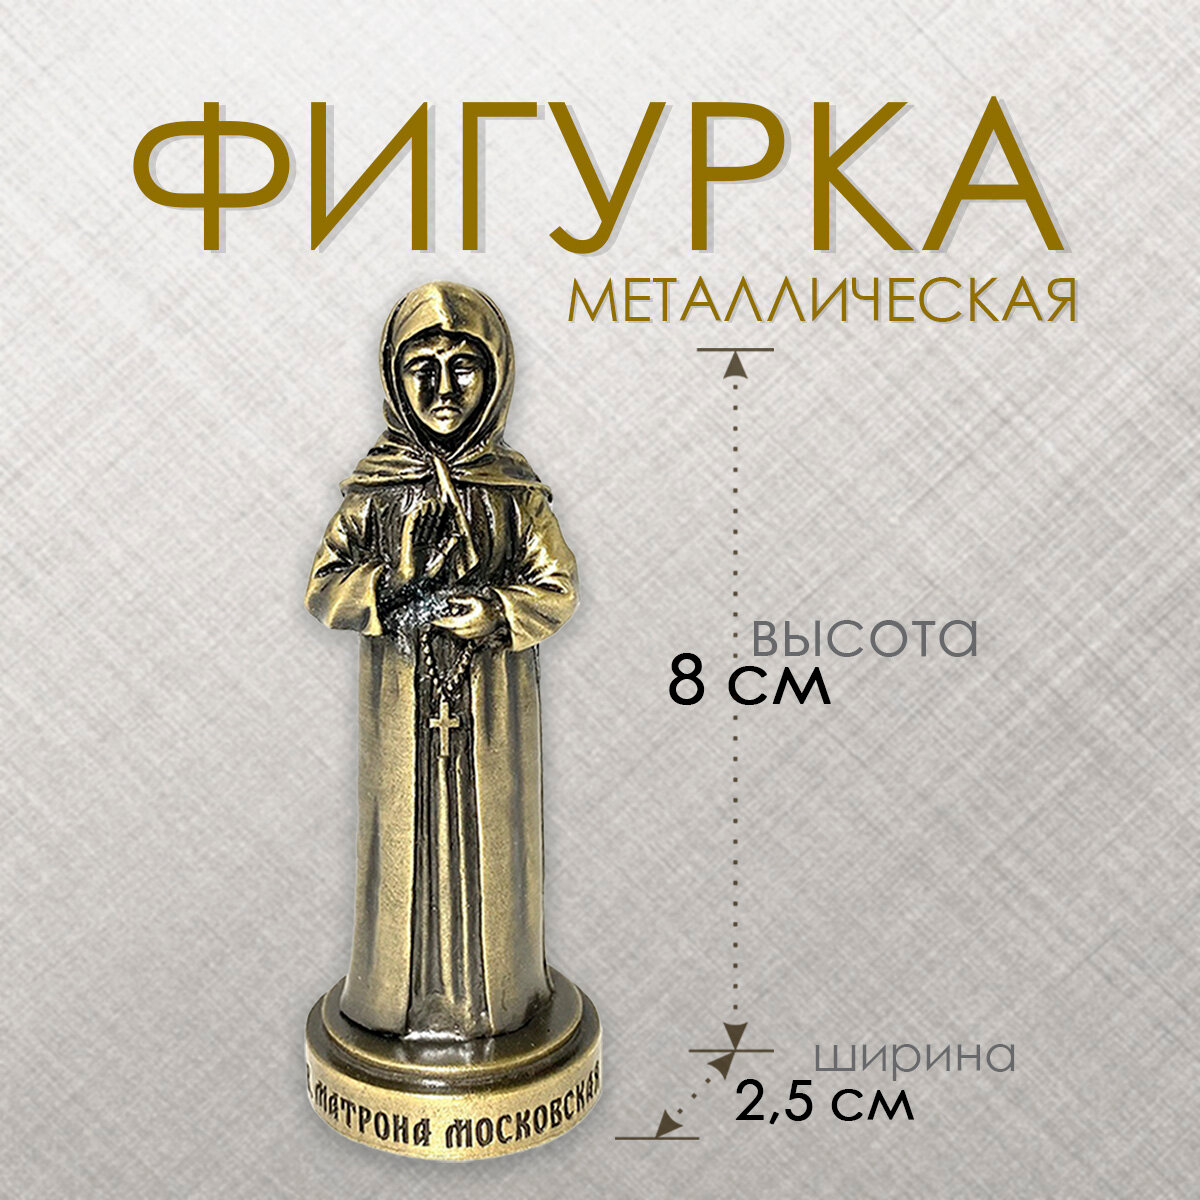 Матрона Московская. Фигура металлическая, цвет бронза, высота 8 см